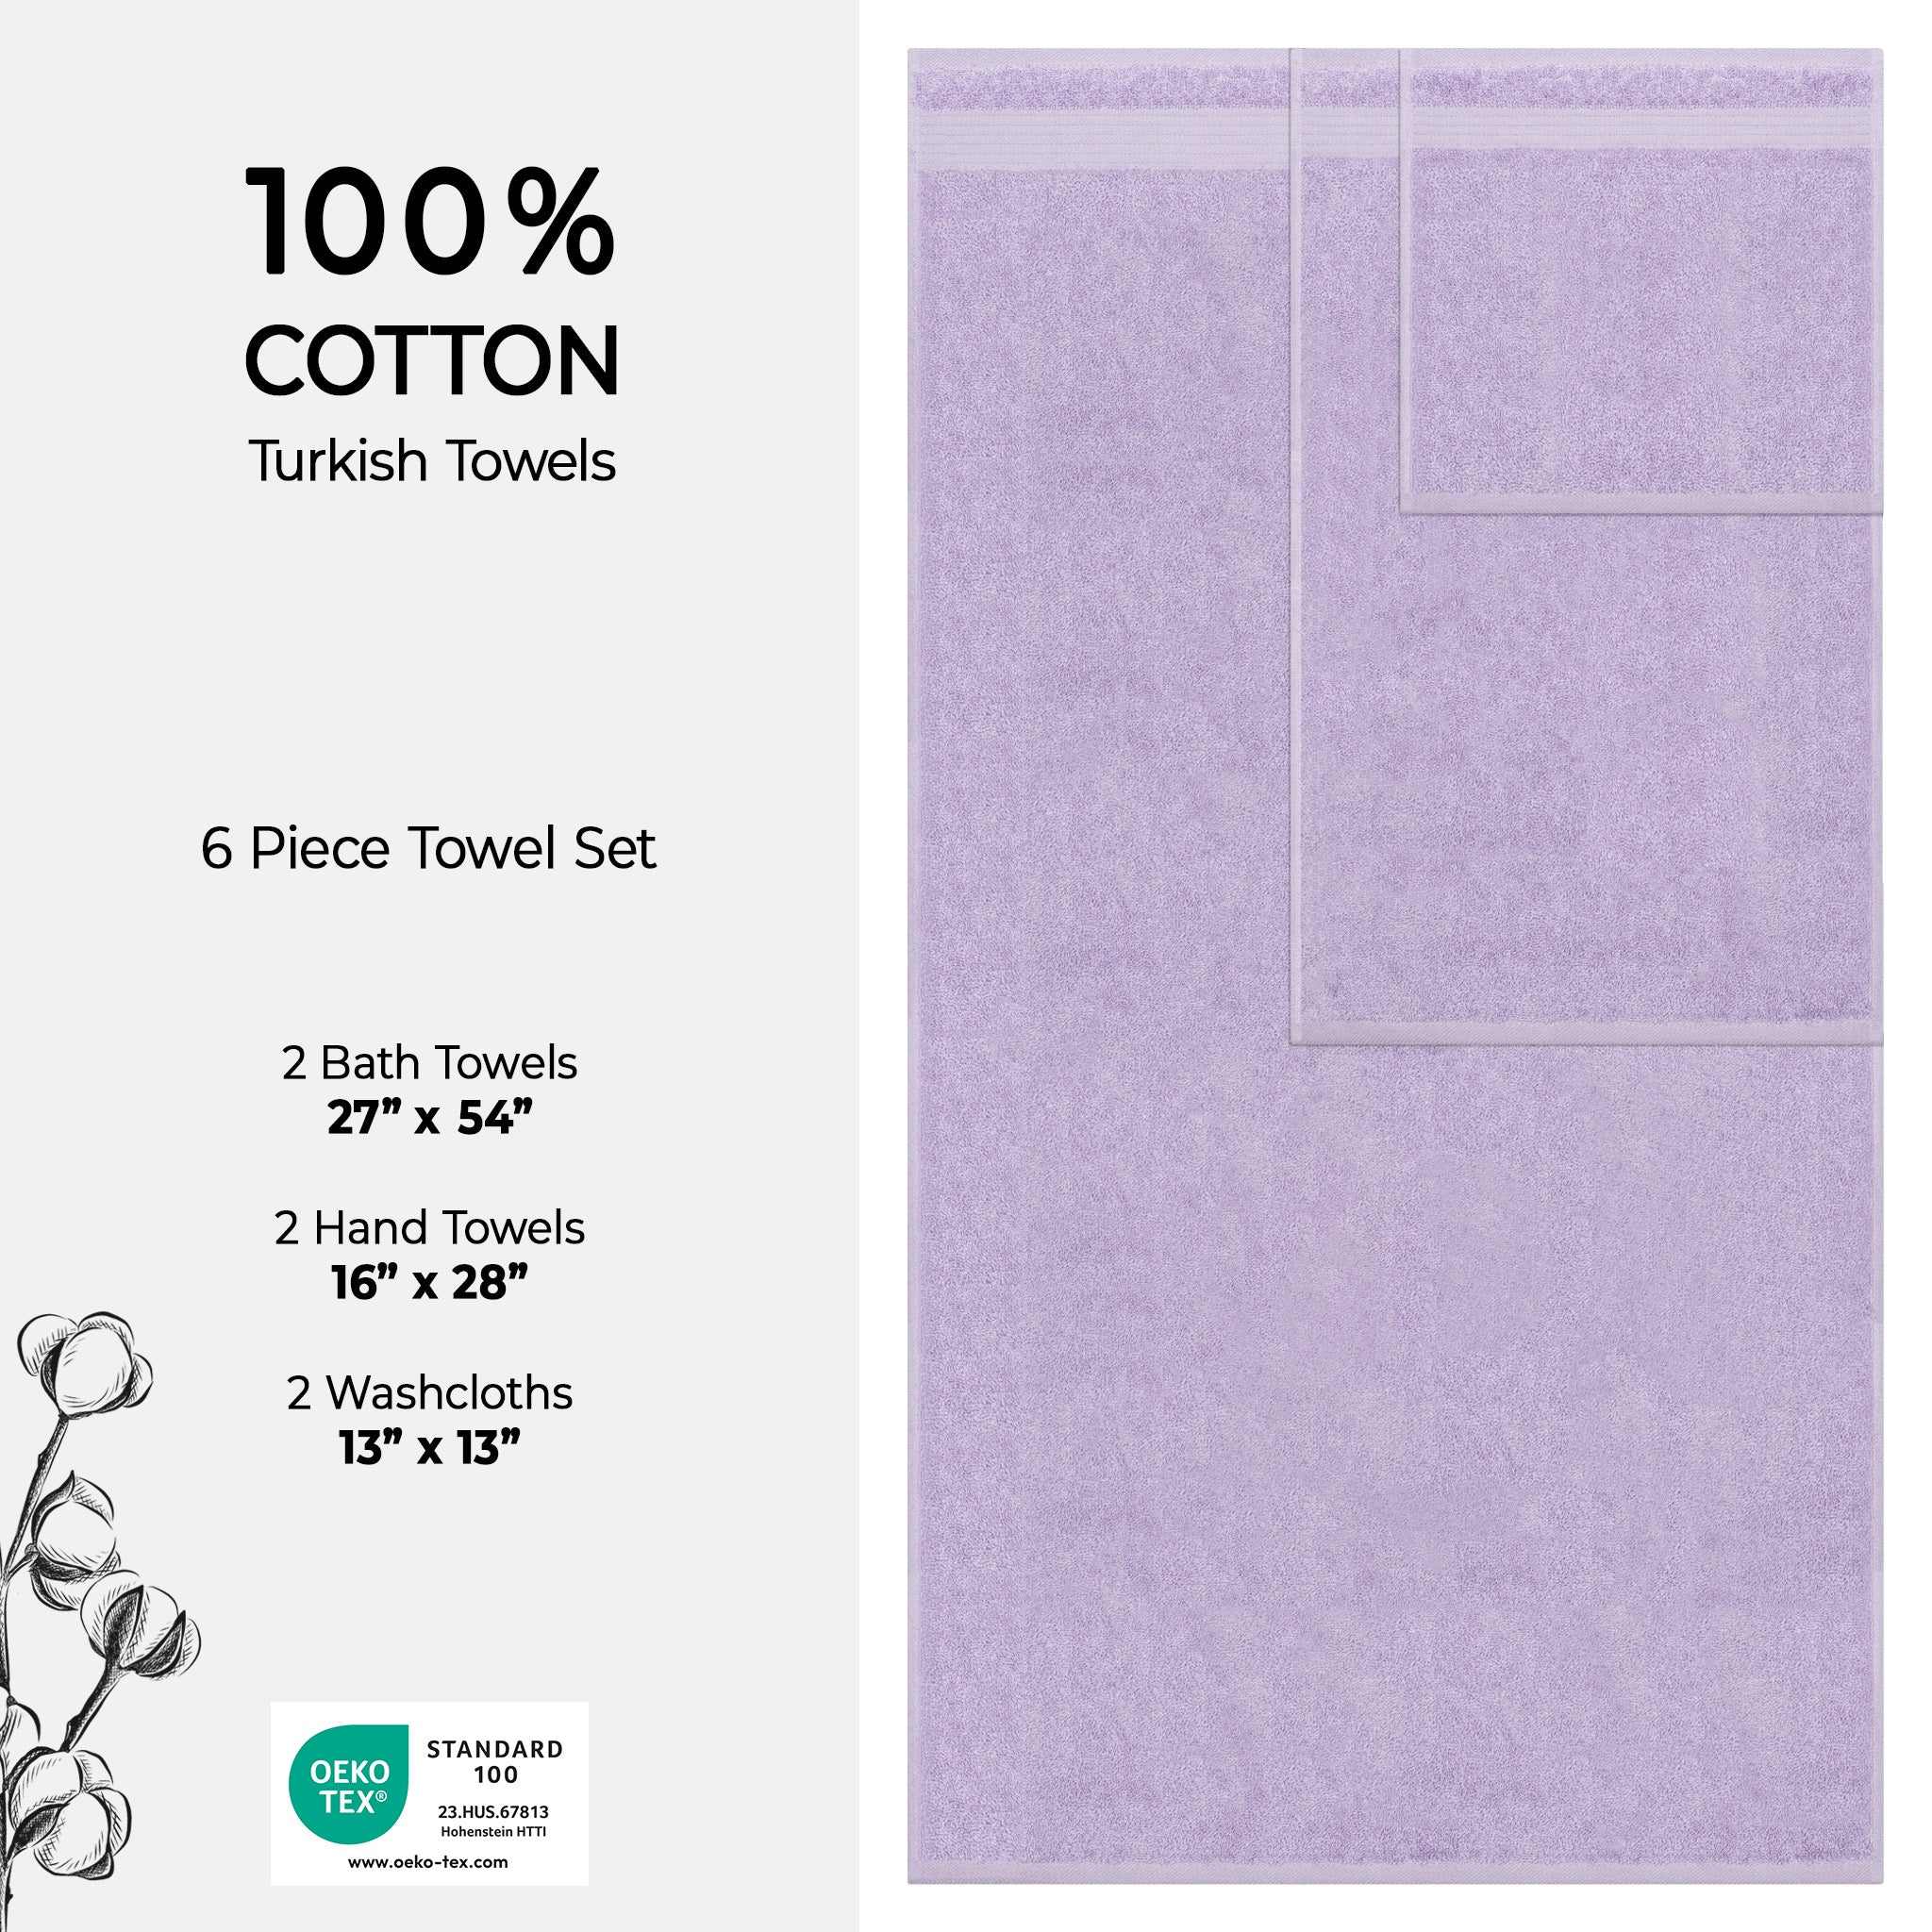 American Soft Linen Bekos 100% Cotton Turkish Towels 6 Piece Bath Towel Set -lilac-04